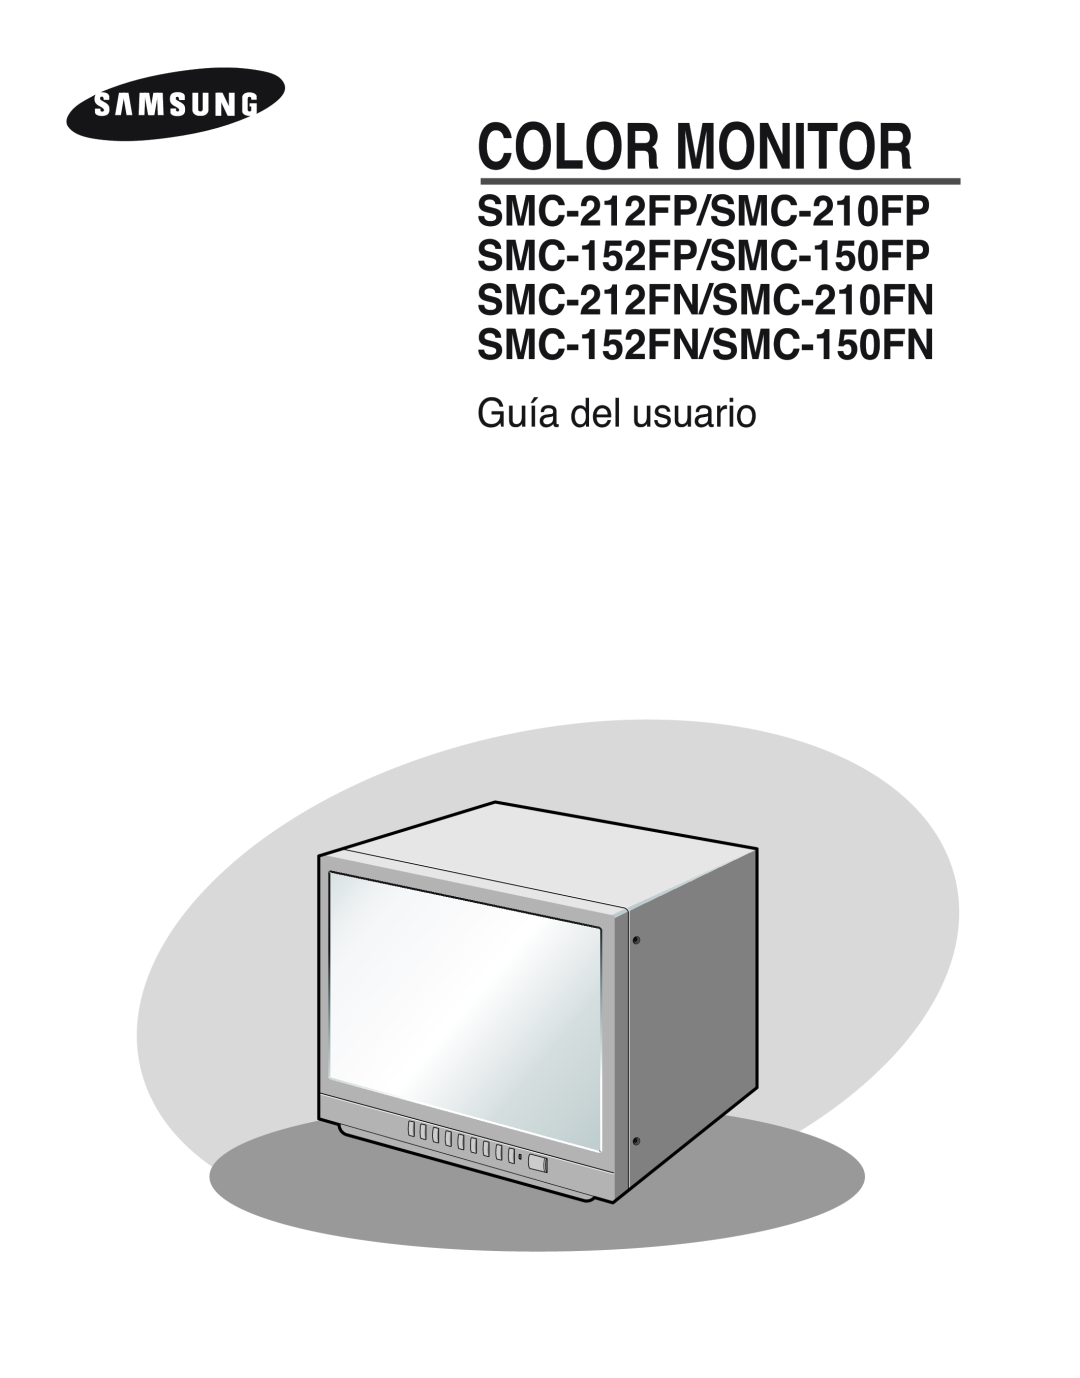 Samsung SMC-212FP, SMC-150FP, SMC-152FPV, SMC-210FPV manual Guía del usuario, Color Monitor 